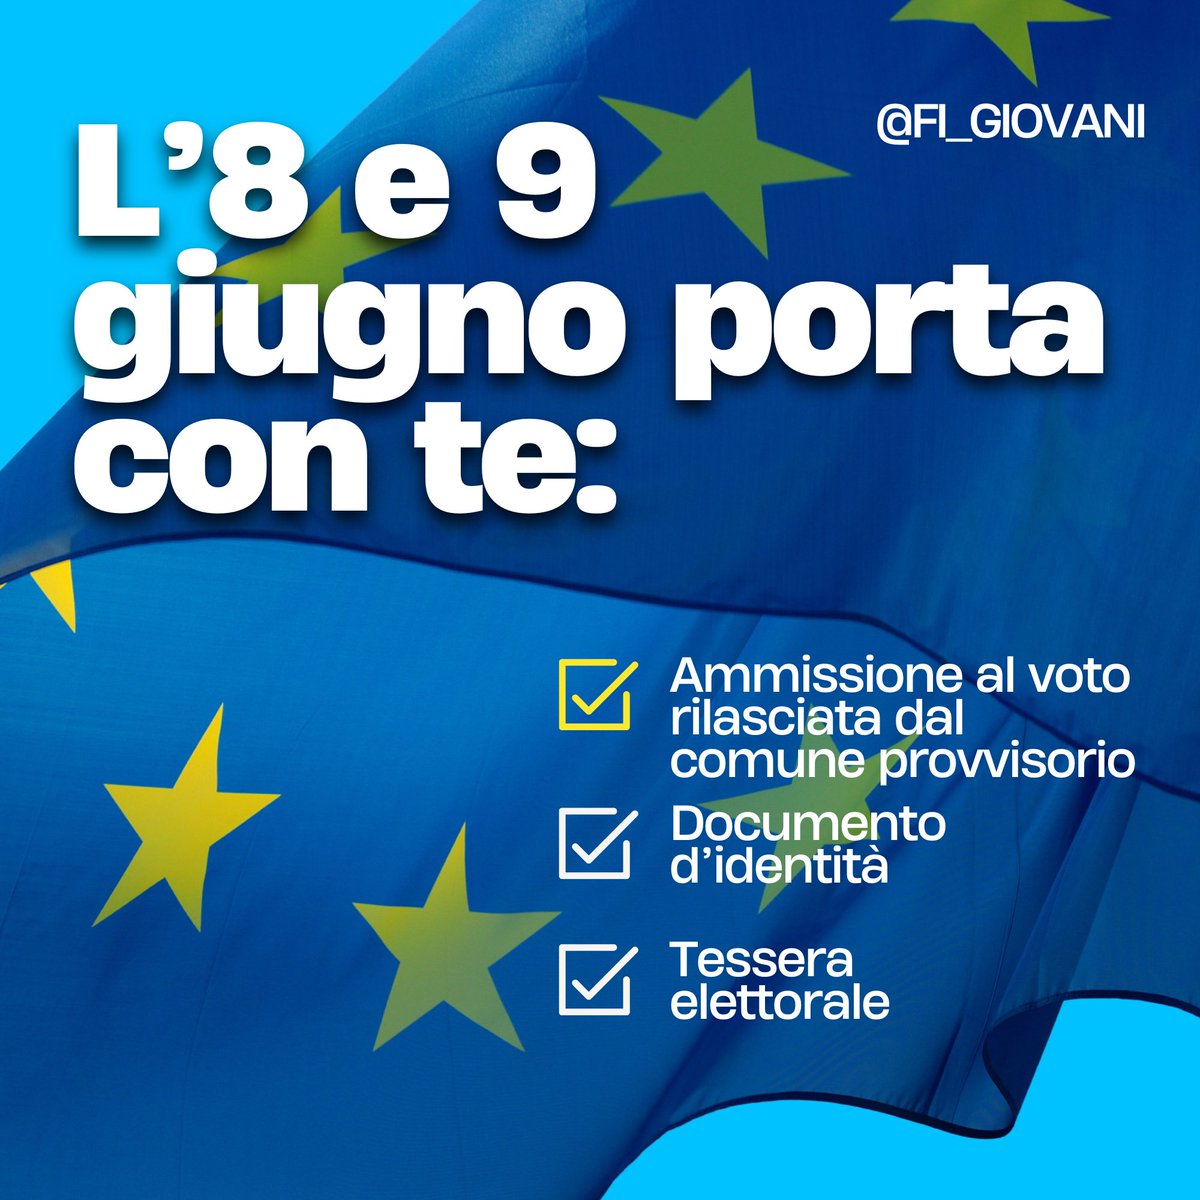 🇮🇹 Per la prima volta grazie a @forza_italia gli studenti potranno votare da fuori sede! Vuoi sapere come? Scorri il post e invia la richiesta entro il 5 maggio 🗳️